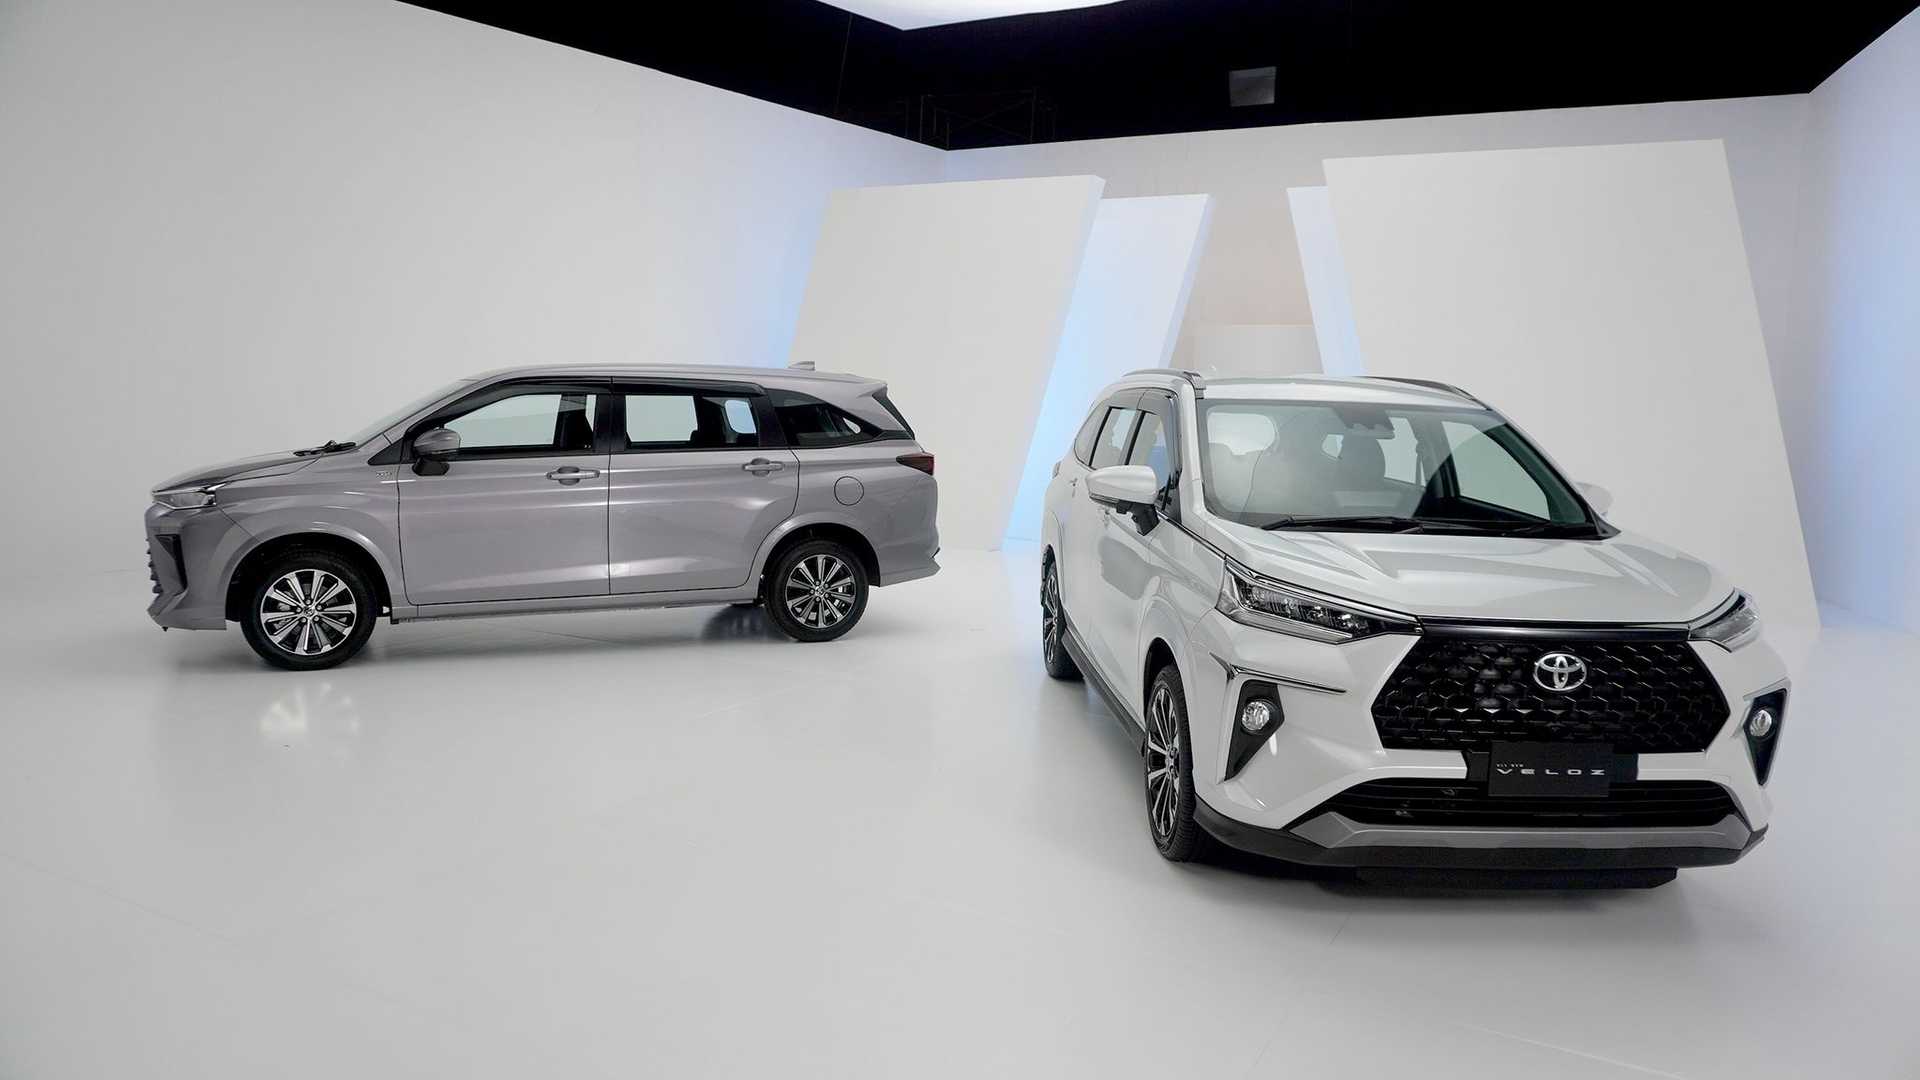 Harga Toyota Veloz 2022 Terbaru, Review Lengkap Spesifikasi dan Interior!.